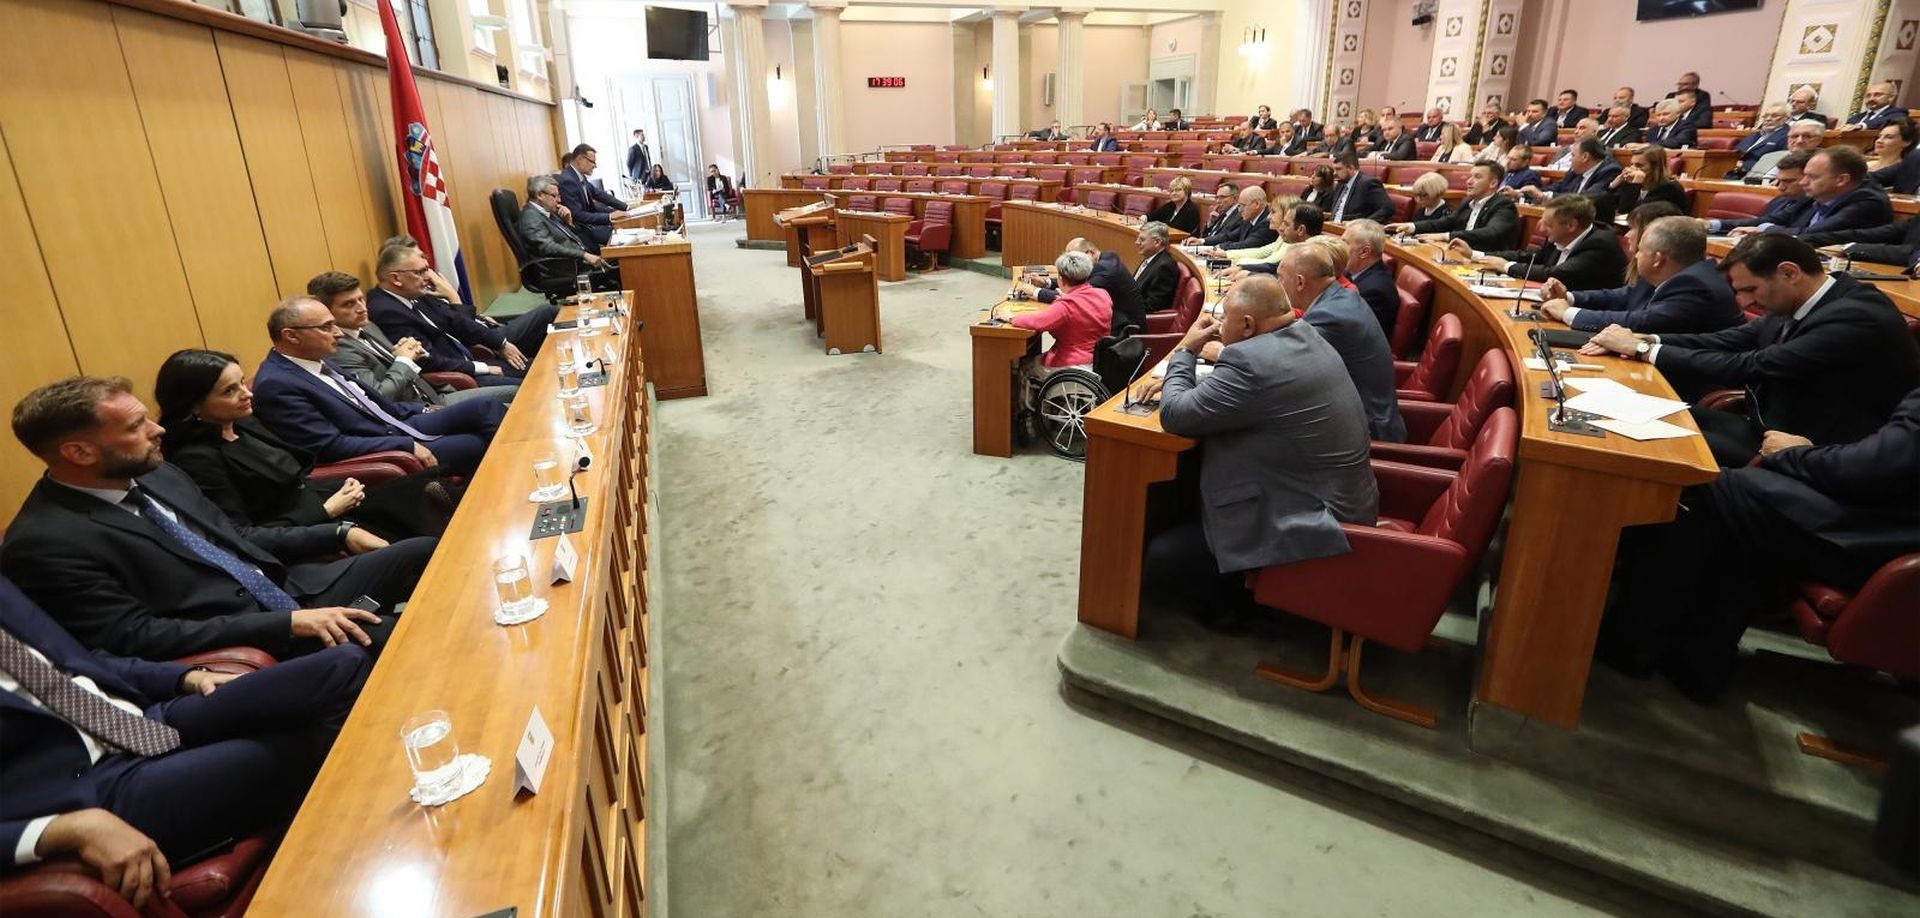 19.07.2019., Zagreb- Saborski zastupnici izglasali povjerenje novoizabranim ministrima u Vladi RH.
Photo: Robert Anic/PIXSELL